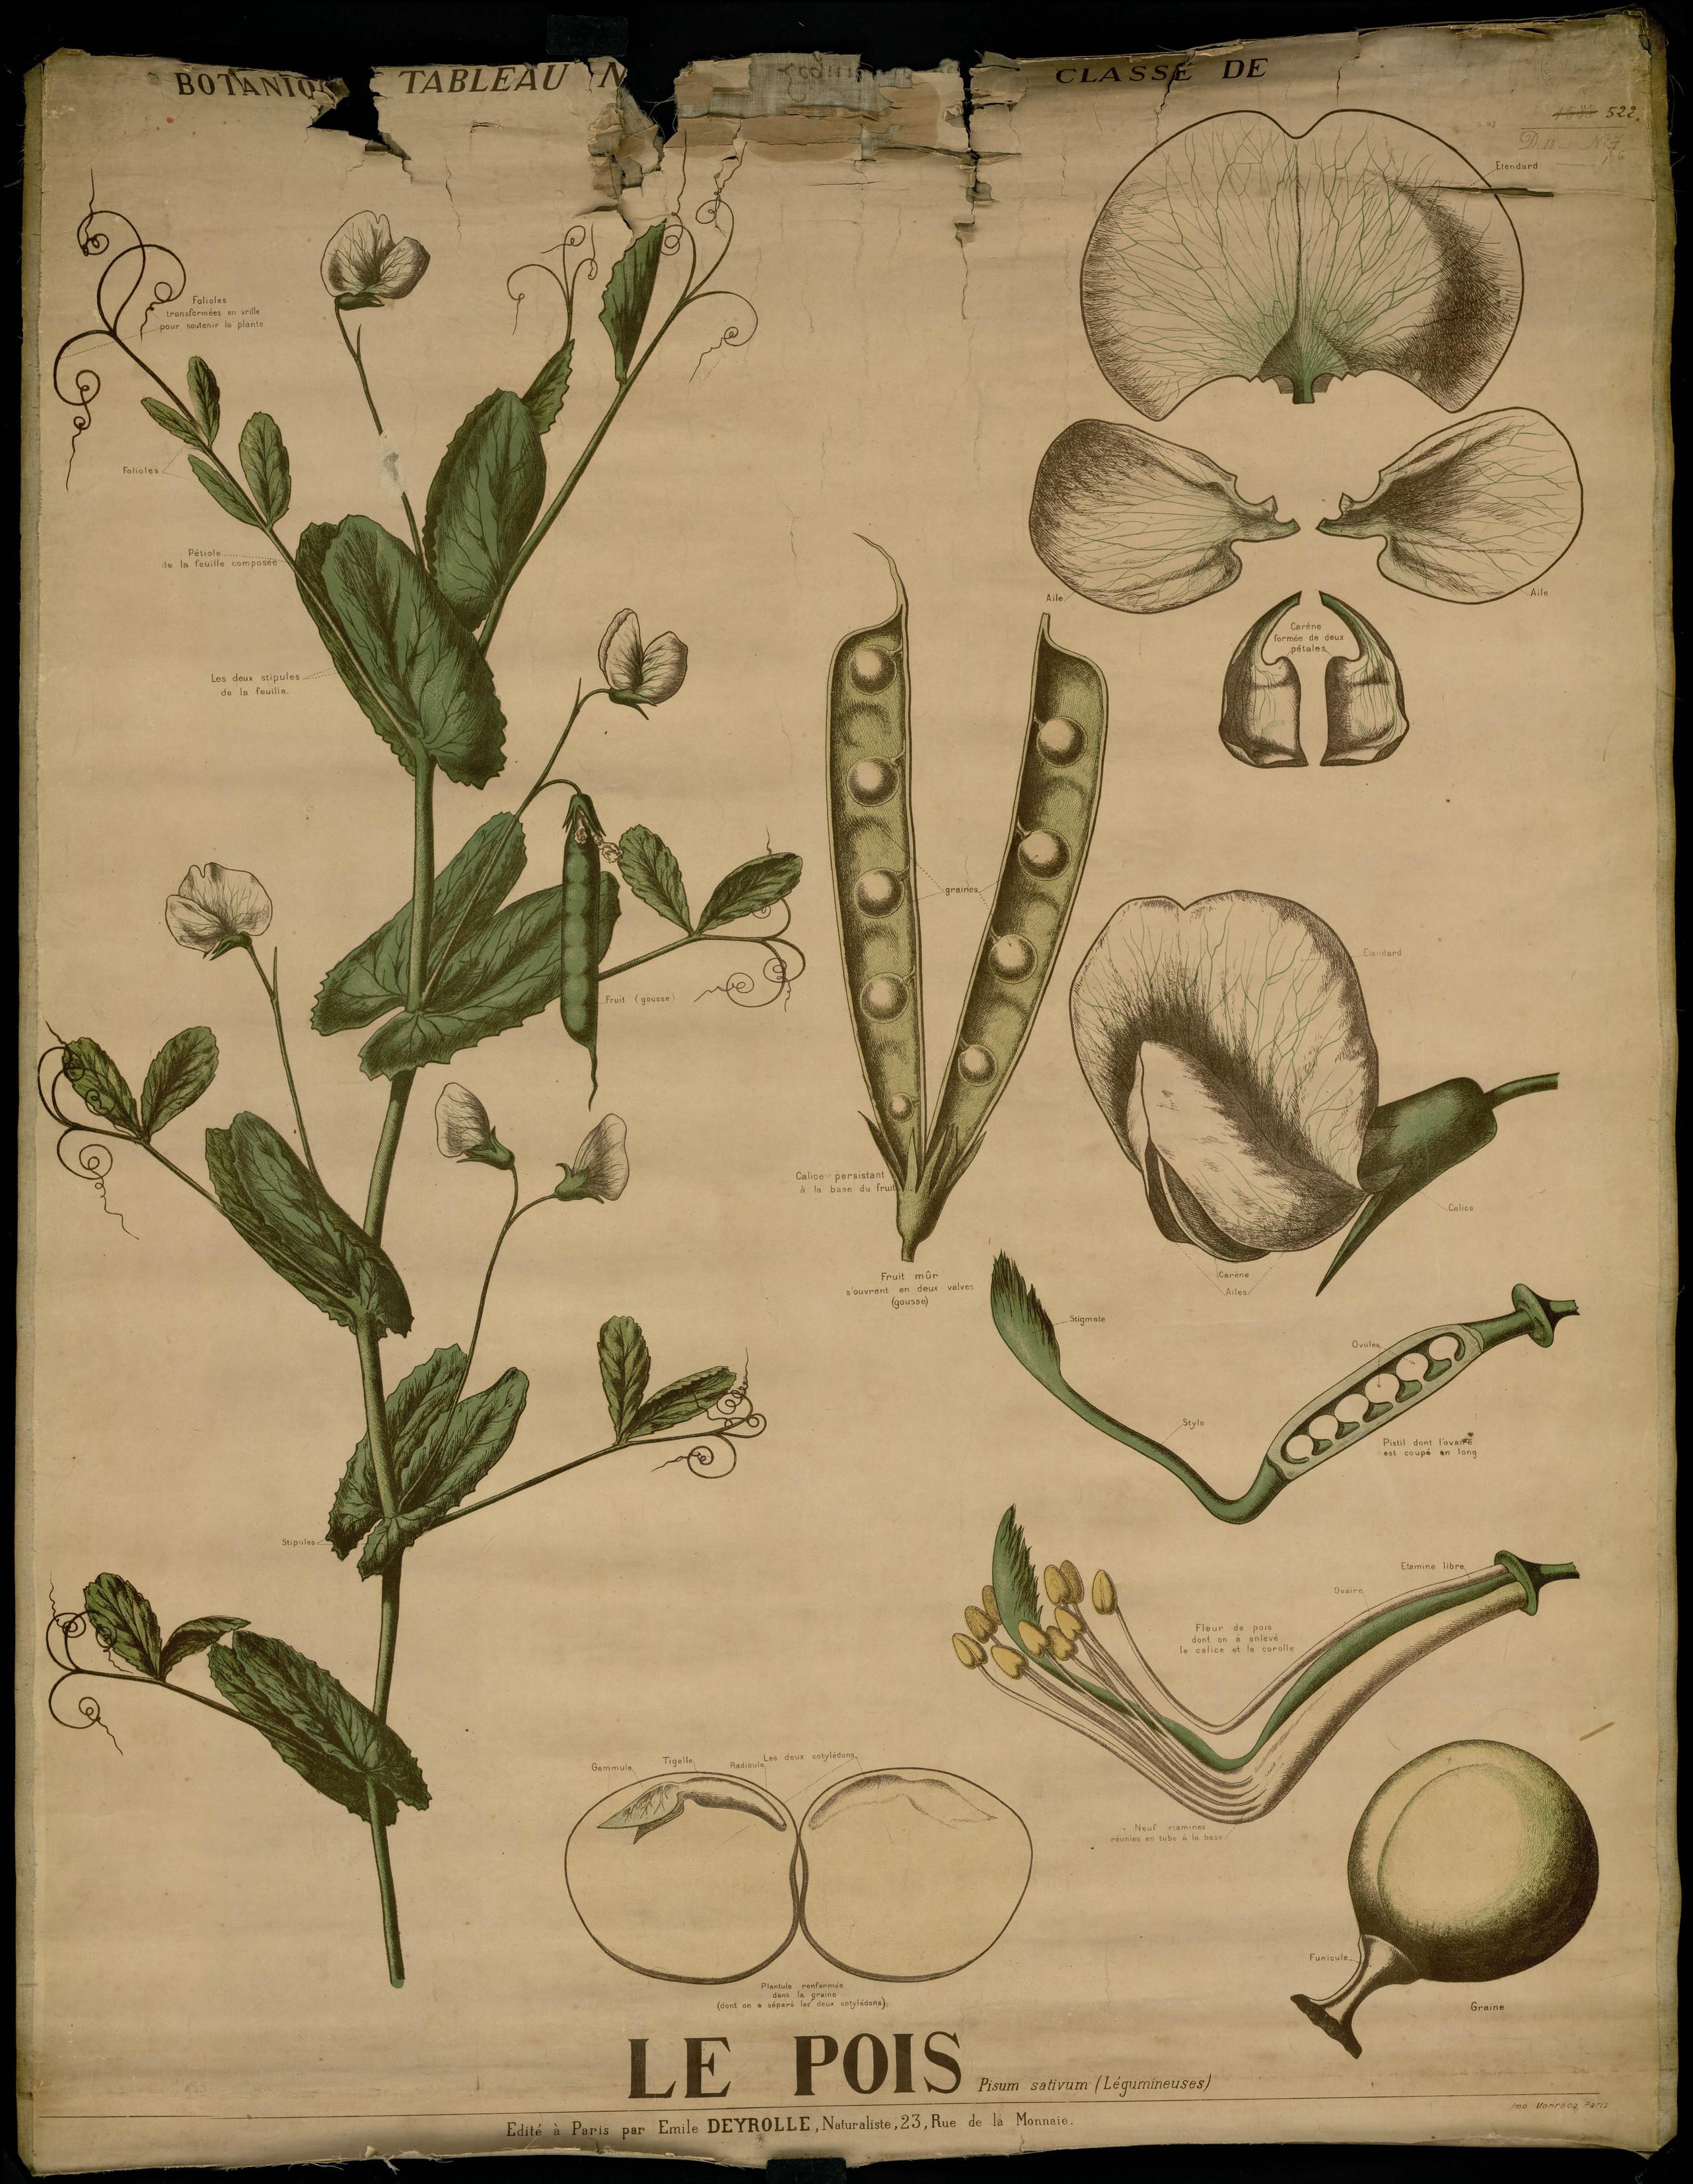 Résultat de recherche d'images pour "planches botaniques petit pois"